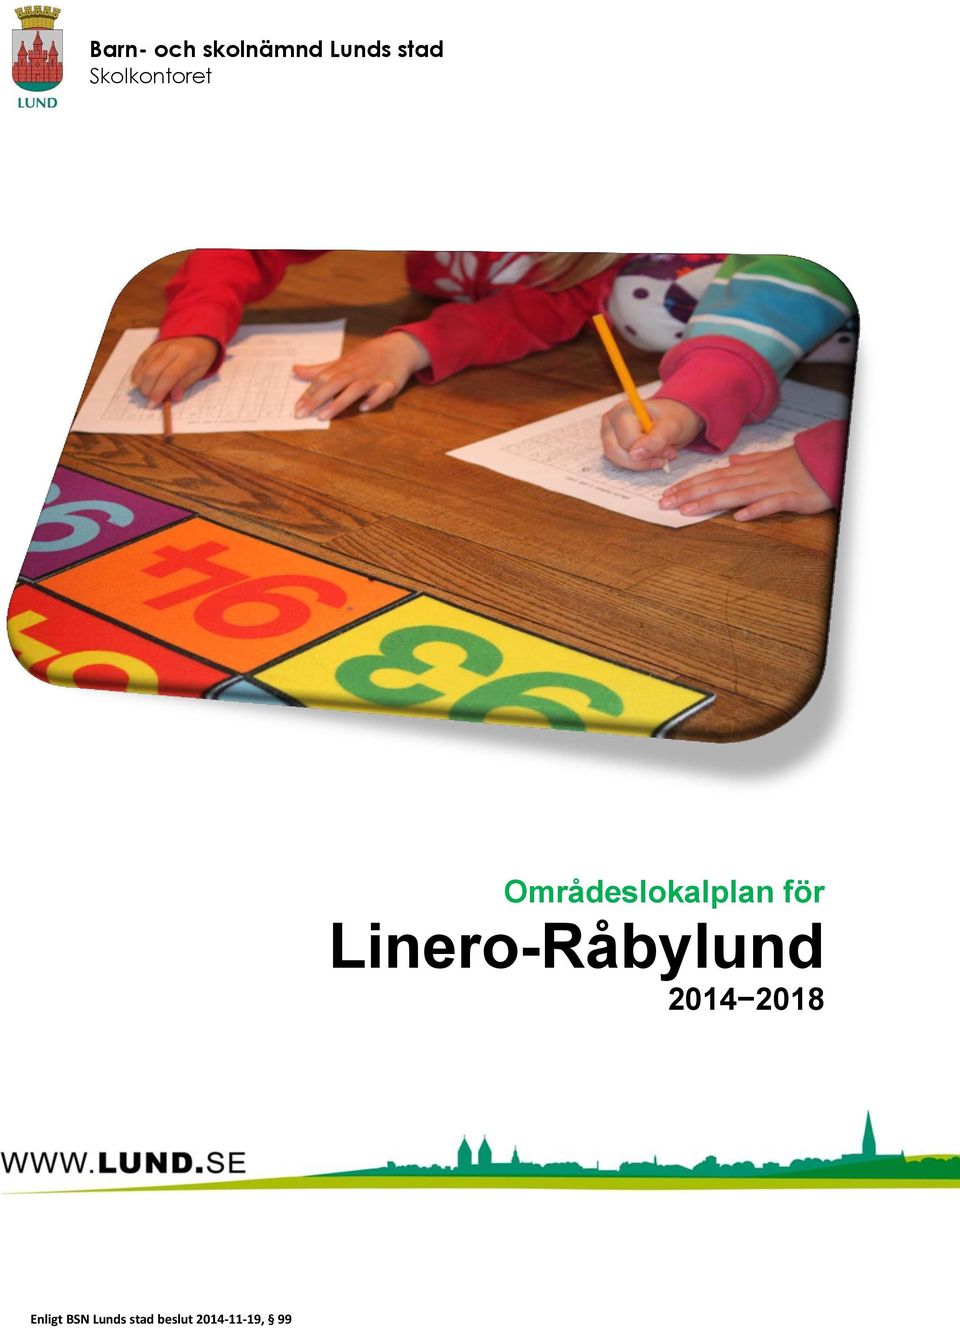 Linero-Råbylund 2014 2018 Enligt